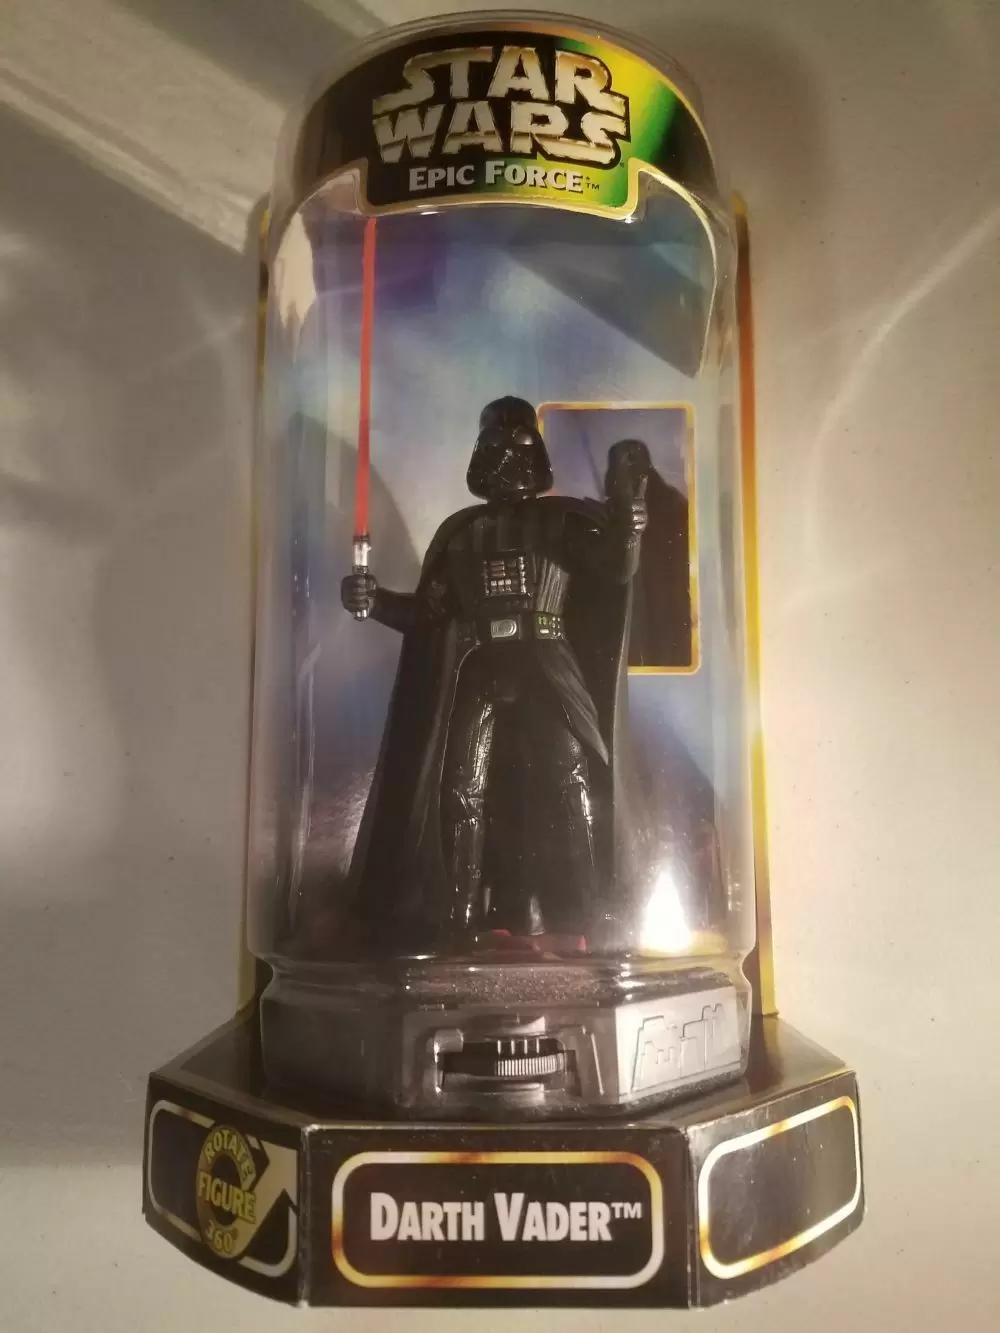 Star Wars Epic Force - Darth Vader